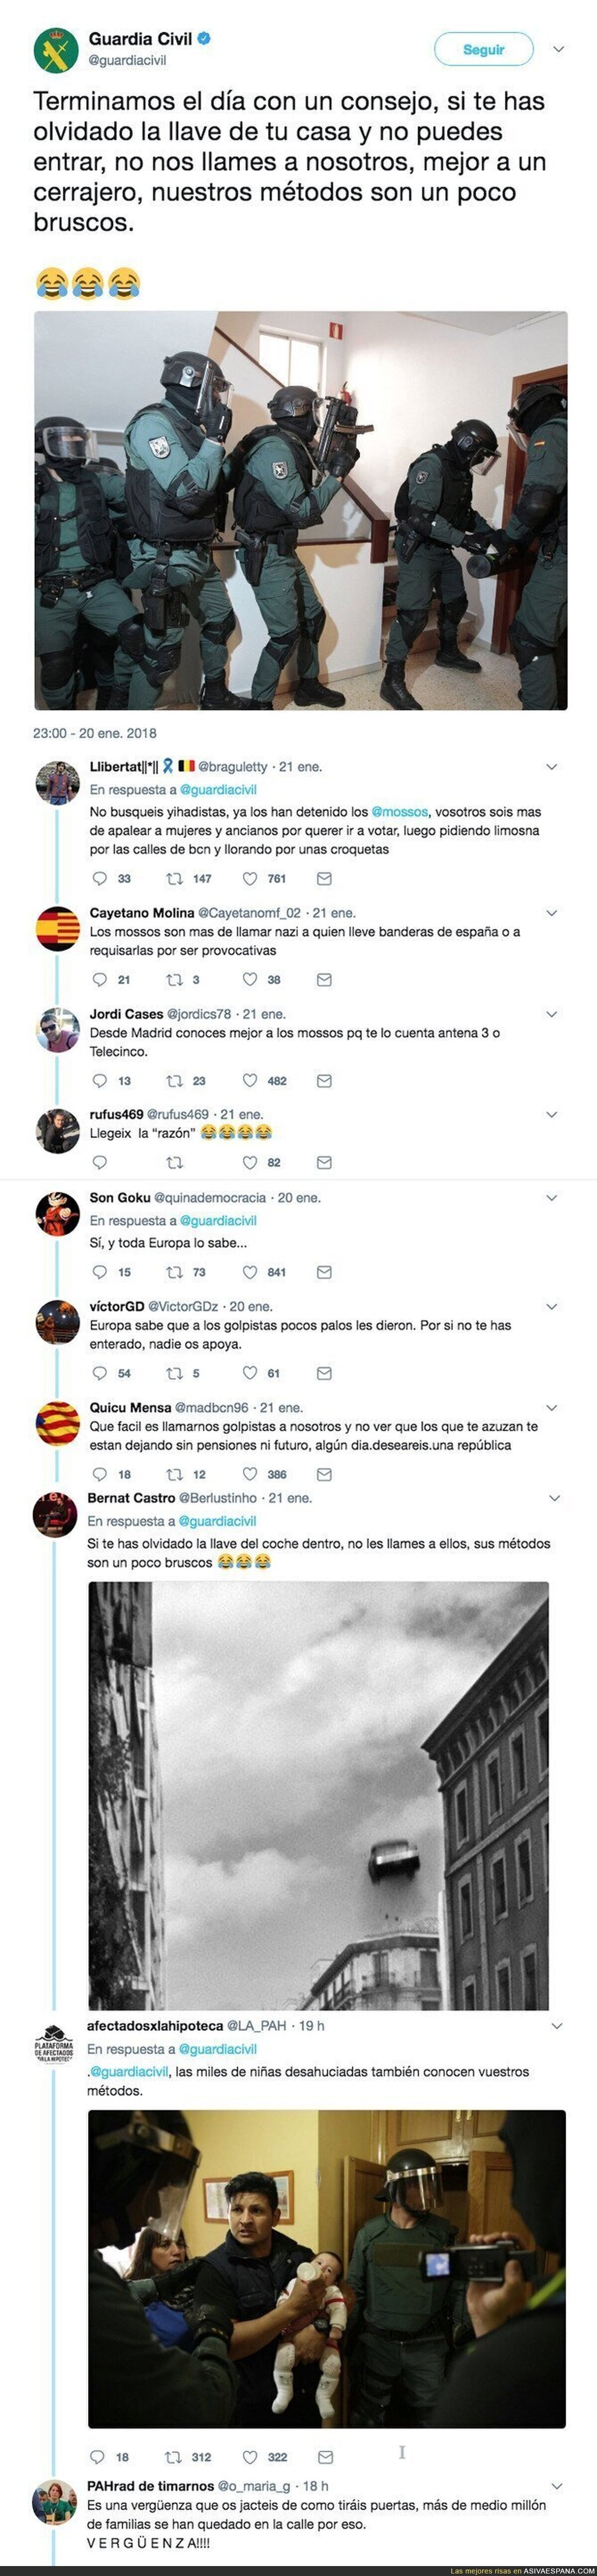 La Guardia Civil envía un consejo por Twitter y los independentistas catalanes no tienen piedad en sus respuestas